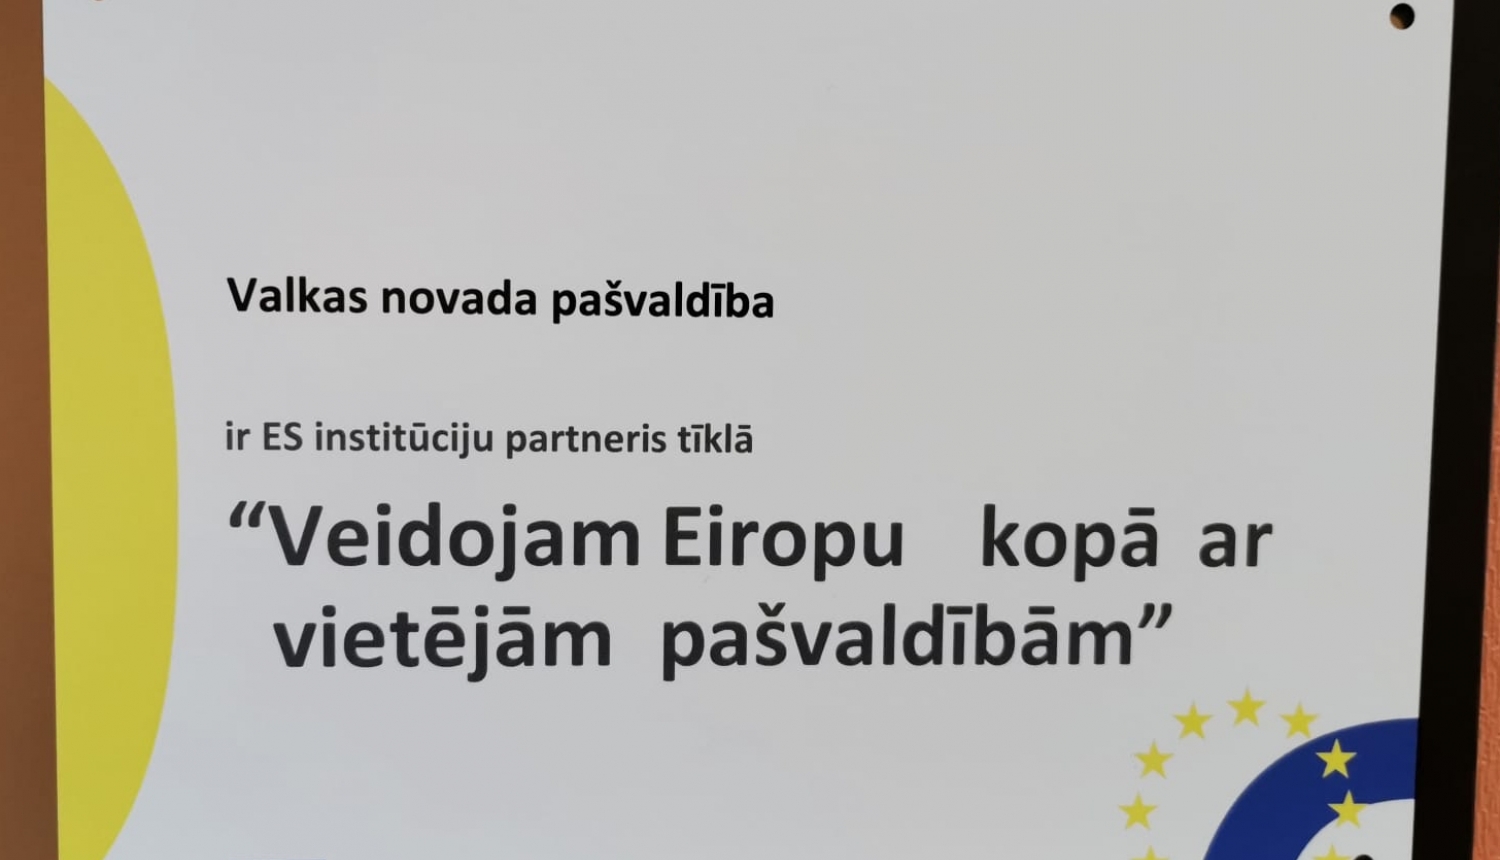 Valkas novada pašvaldība ir Eiropas Savienības institūciju partneris tīklā “Veidojam Eiropu kopā ar vietējām pašvaldībām”